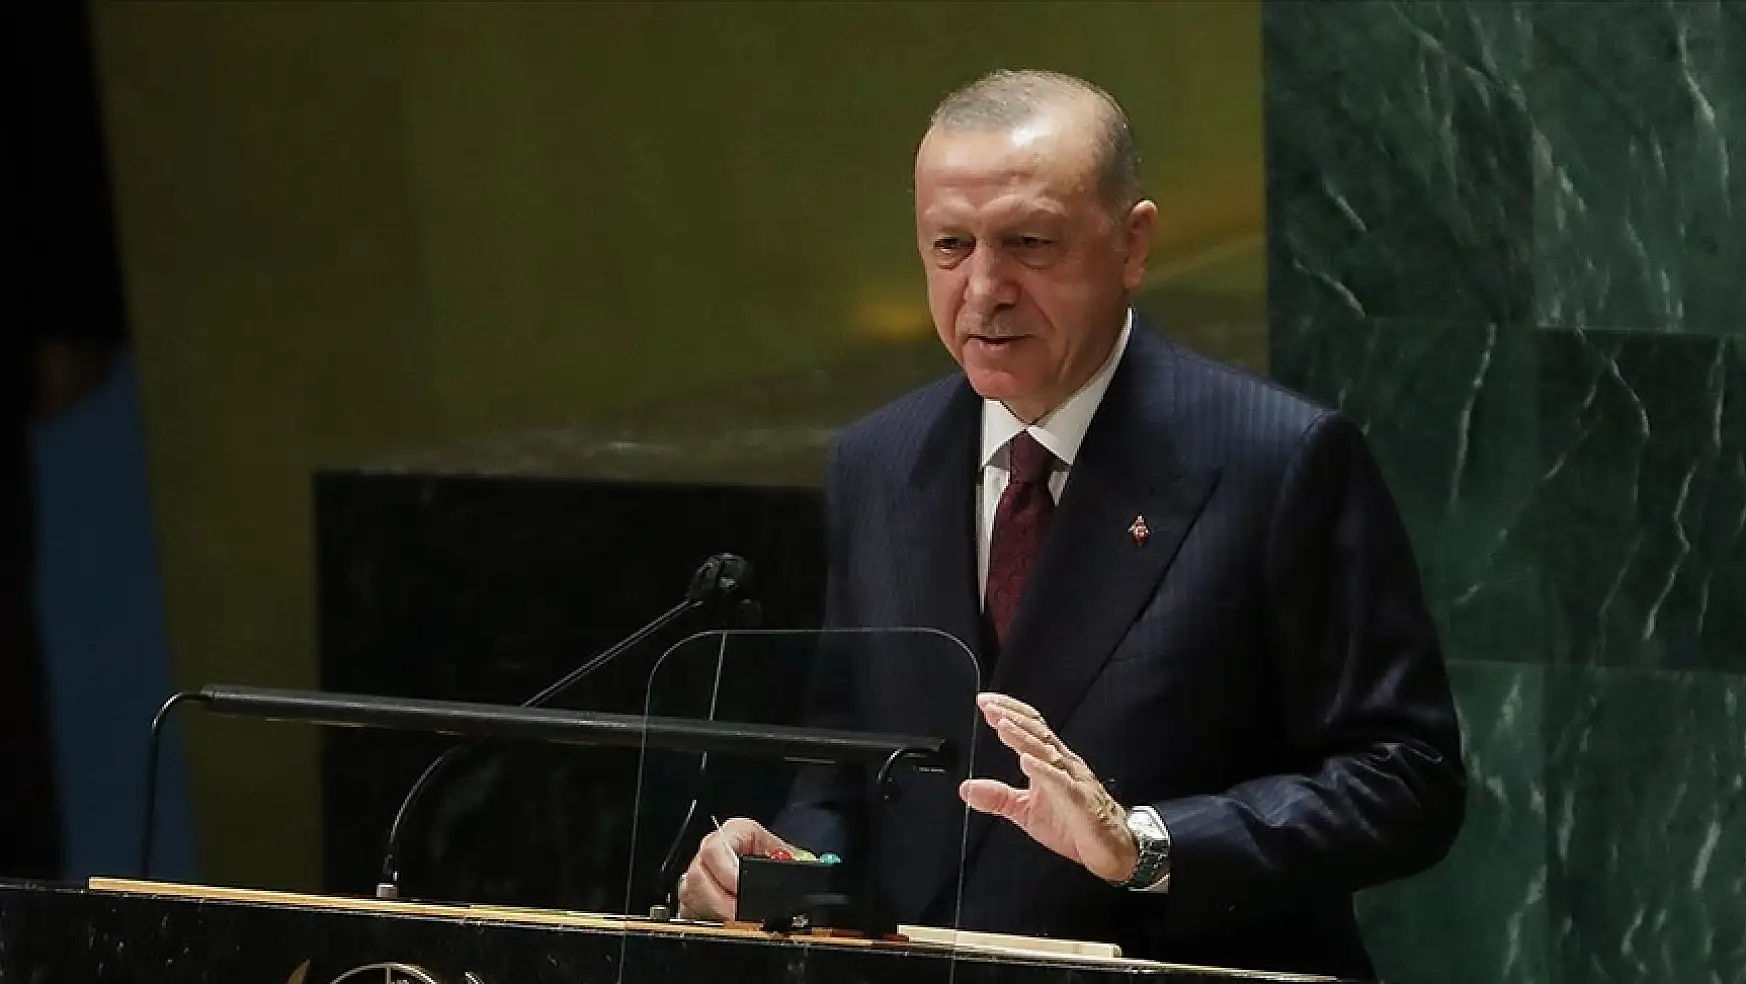 BM Genel Kurulu'nda konuşan Erdoğan: Artık Yunanistan'a 'dur' demenin vakti geldi